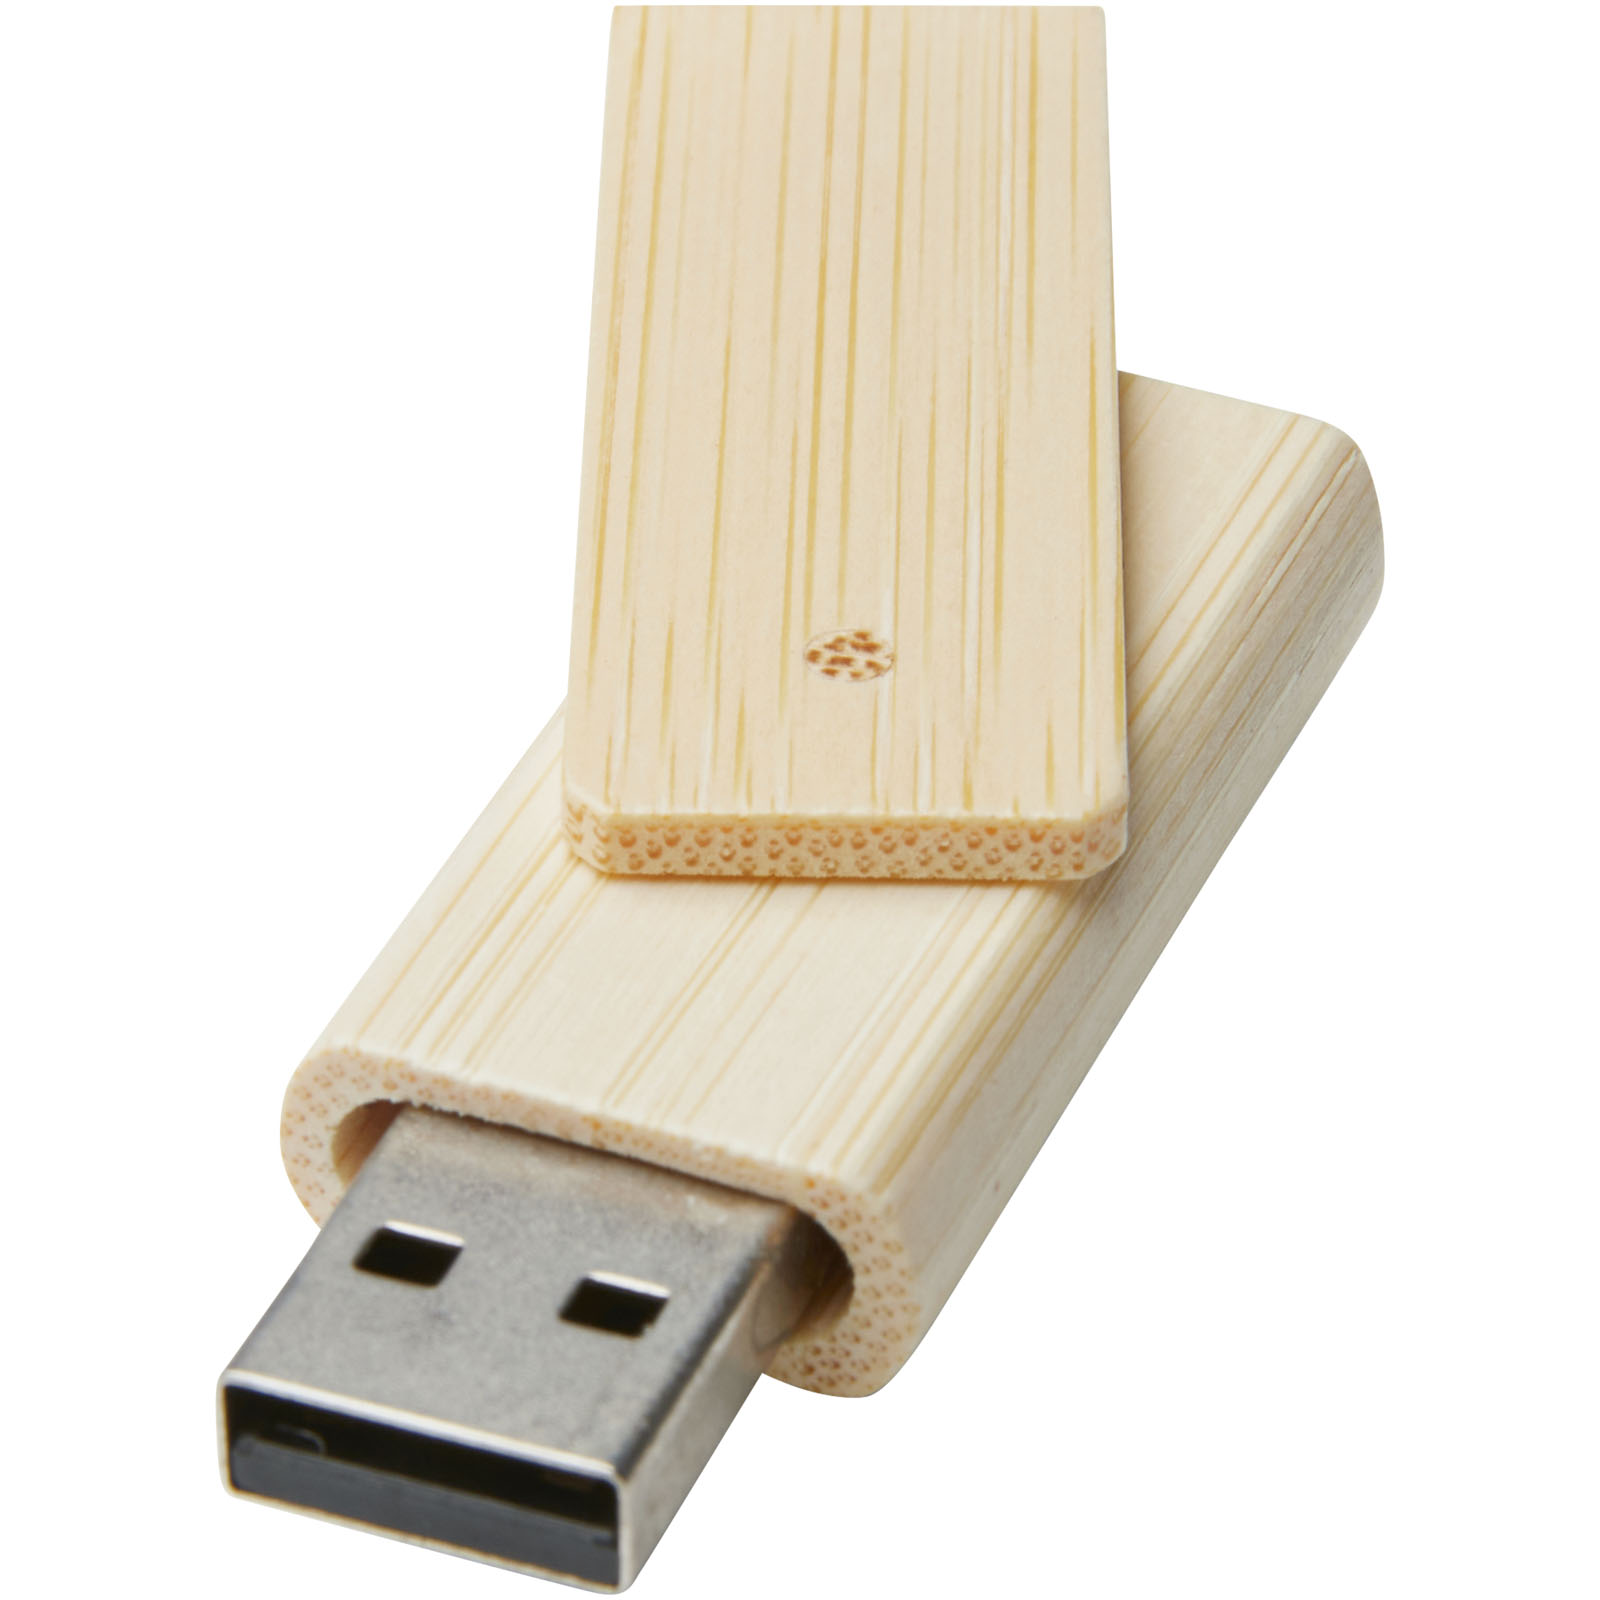 Clés USB publicitaires - Clé USB Rotate 4 Go en bambou